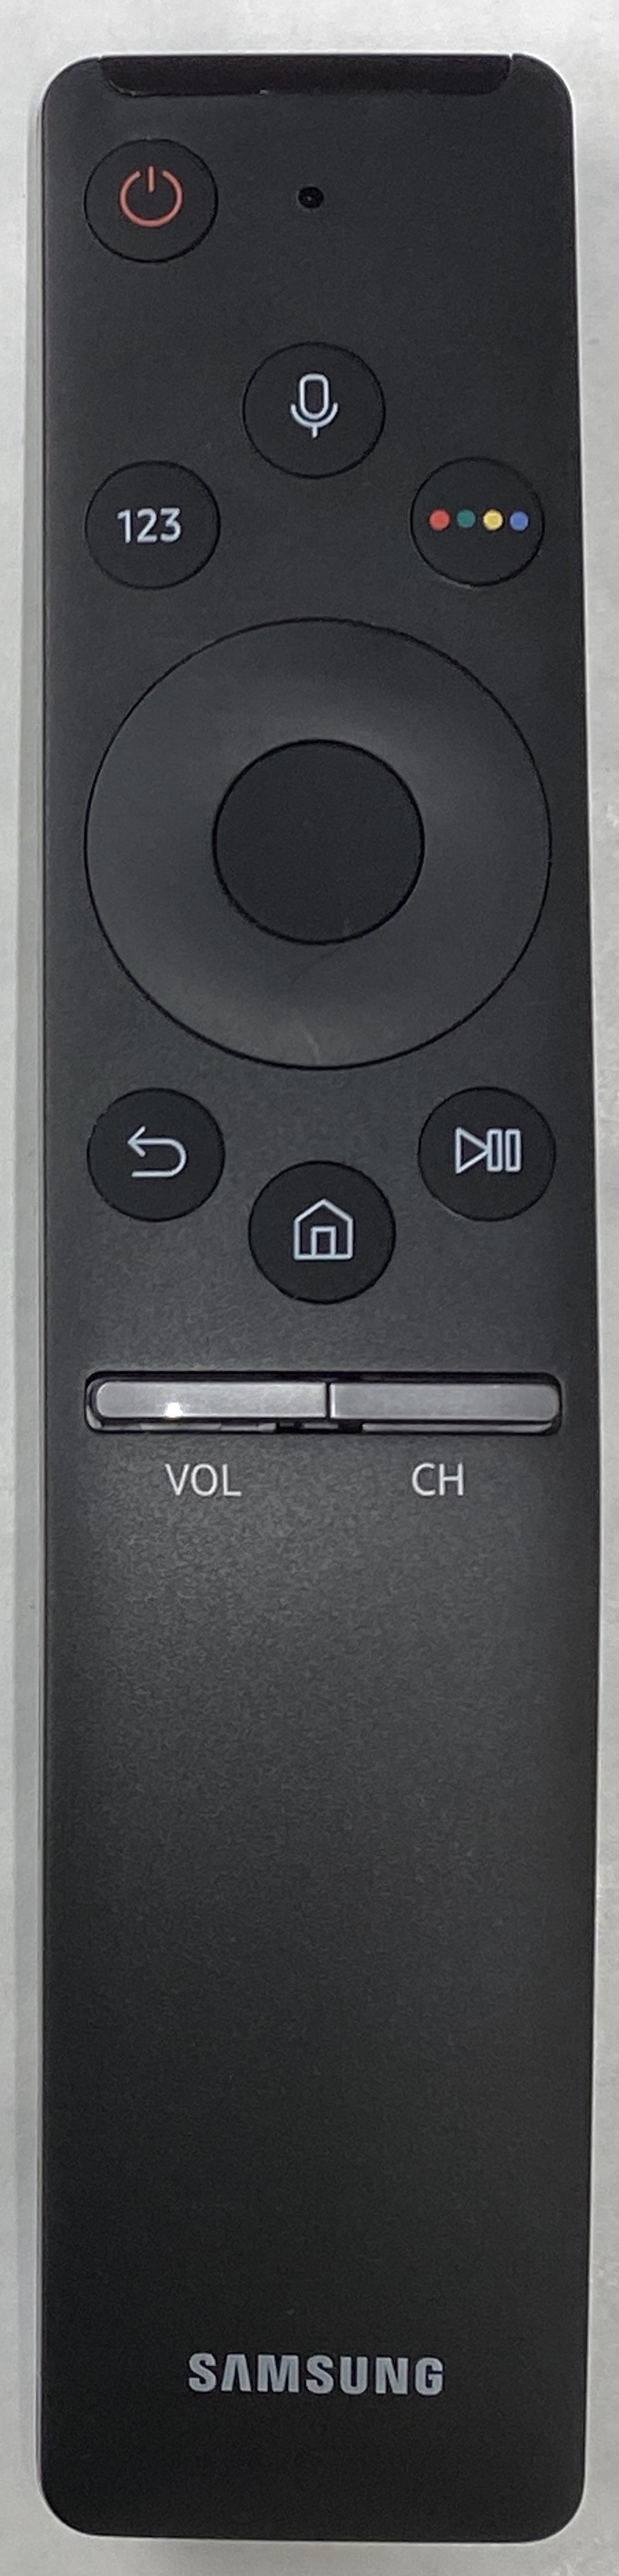 SAMSUNG UA65NU8500G Smart Remote Control Original 